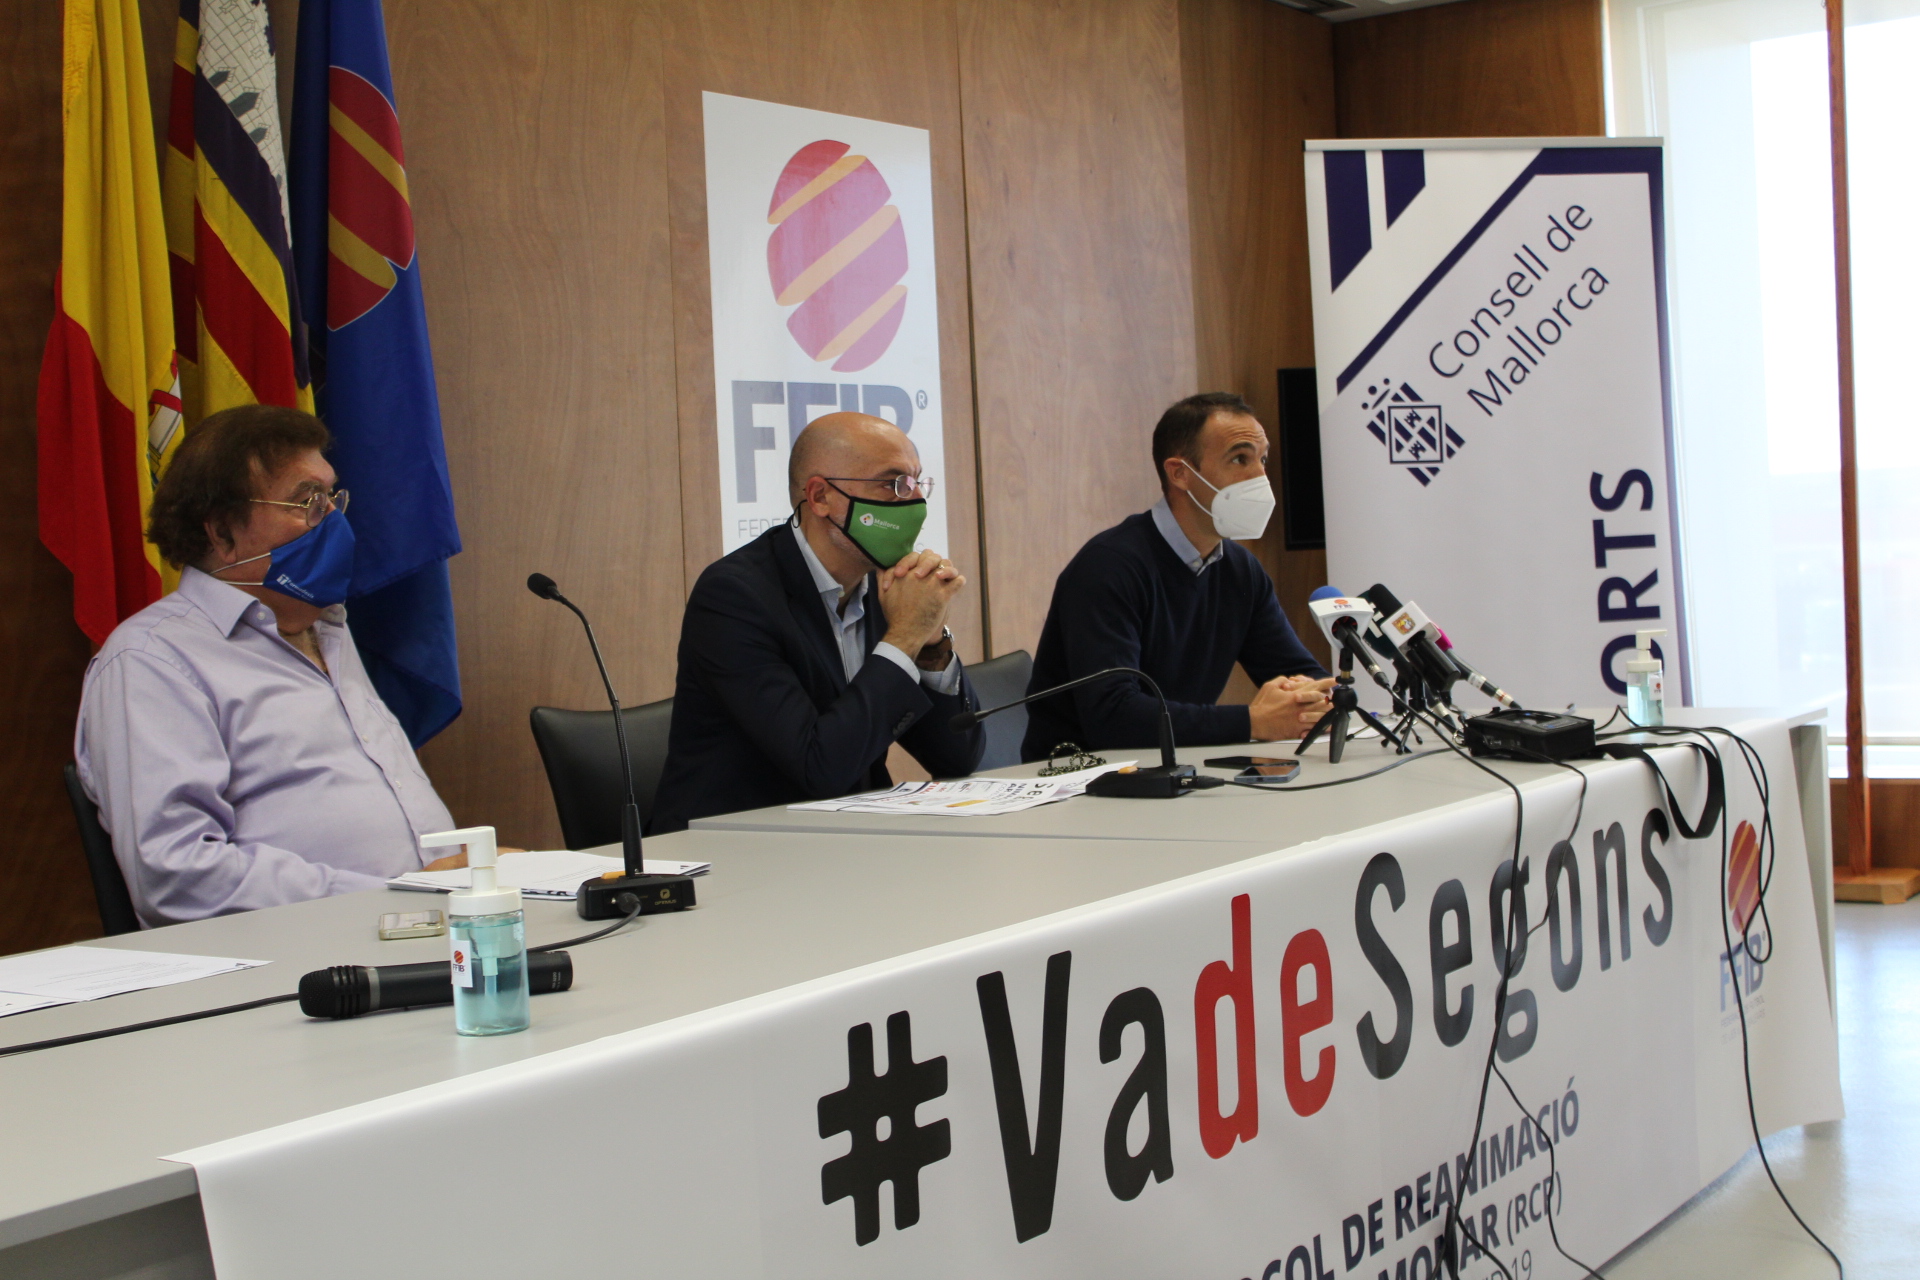 Presentación de la campaña #VadeSegons.